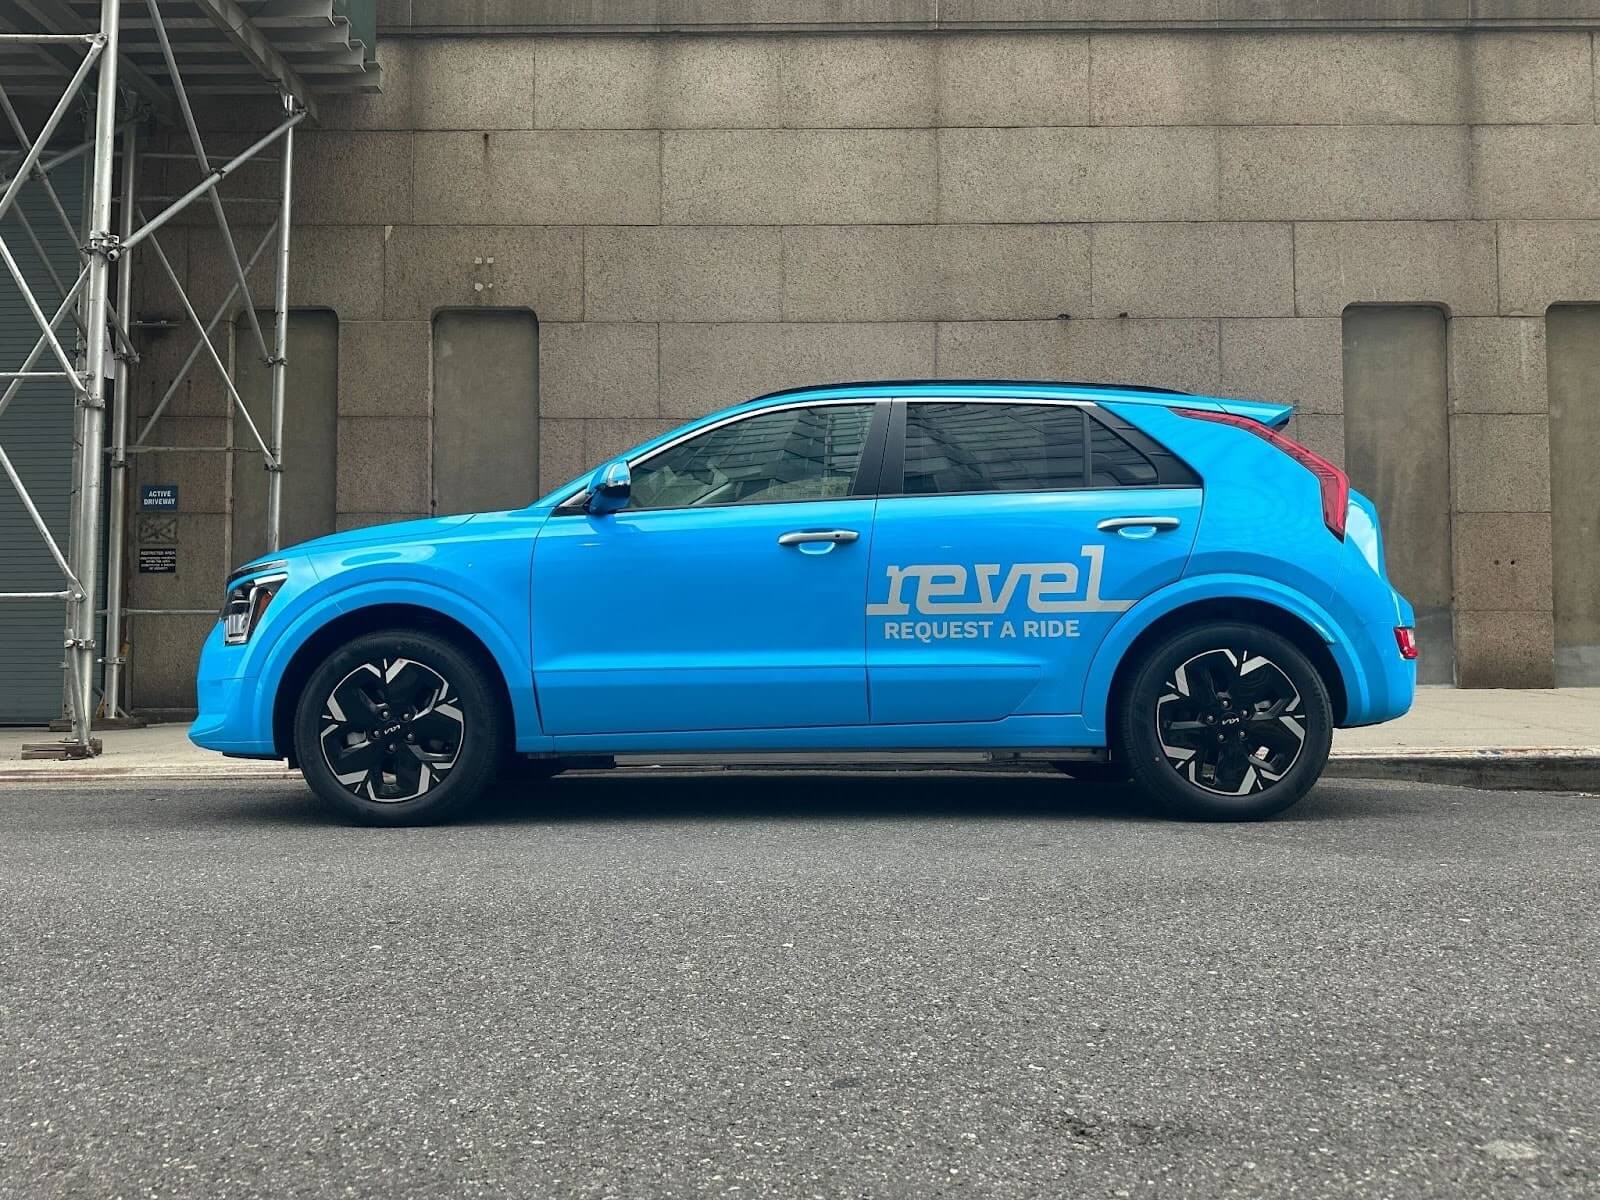 Revel расширяет парк райдшеринга в Нью-Йорке за счет новых электромобилей, присоединяясь к Tesla Model Y и 3